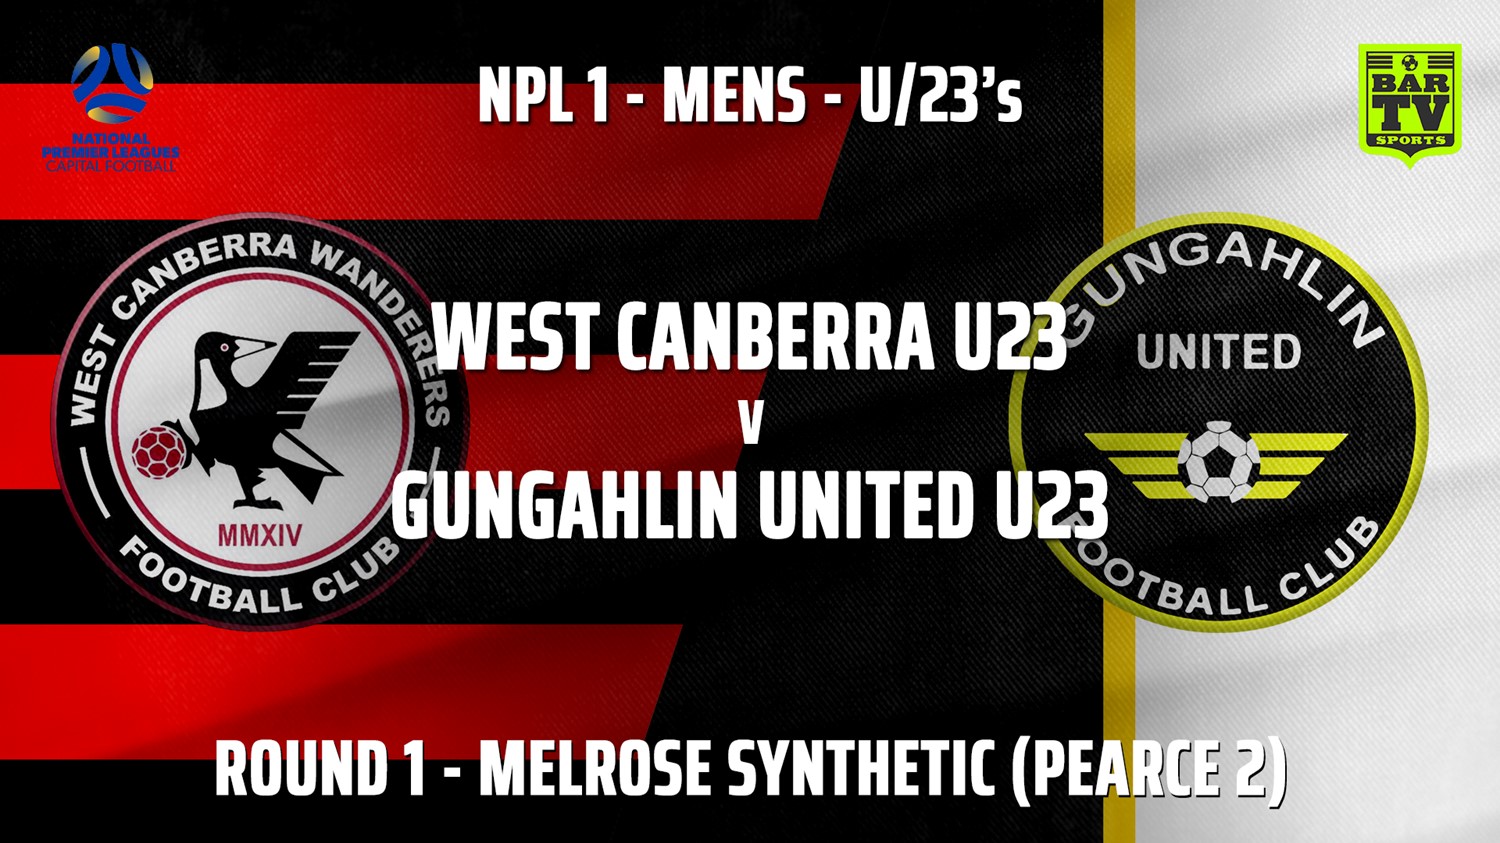 NPL1 Men - U23 - Capital Football  Woden Weston U23 v Gungahlin United U23 Minigame Slate Image